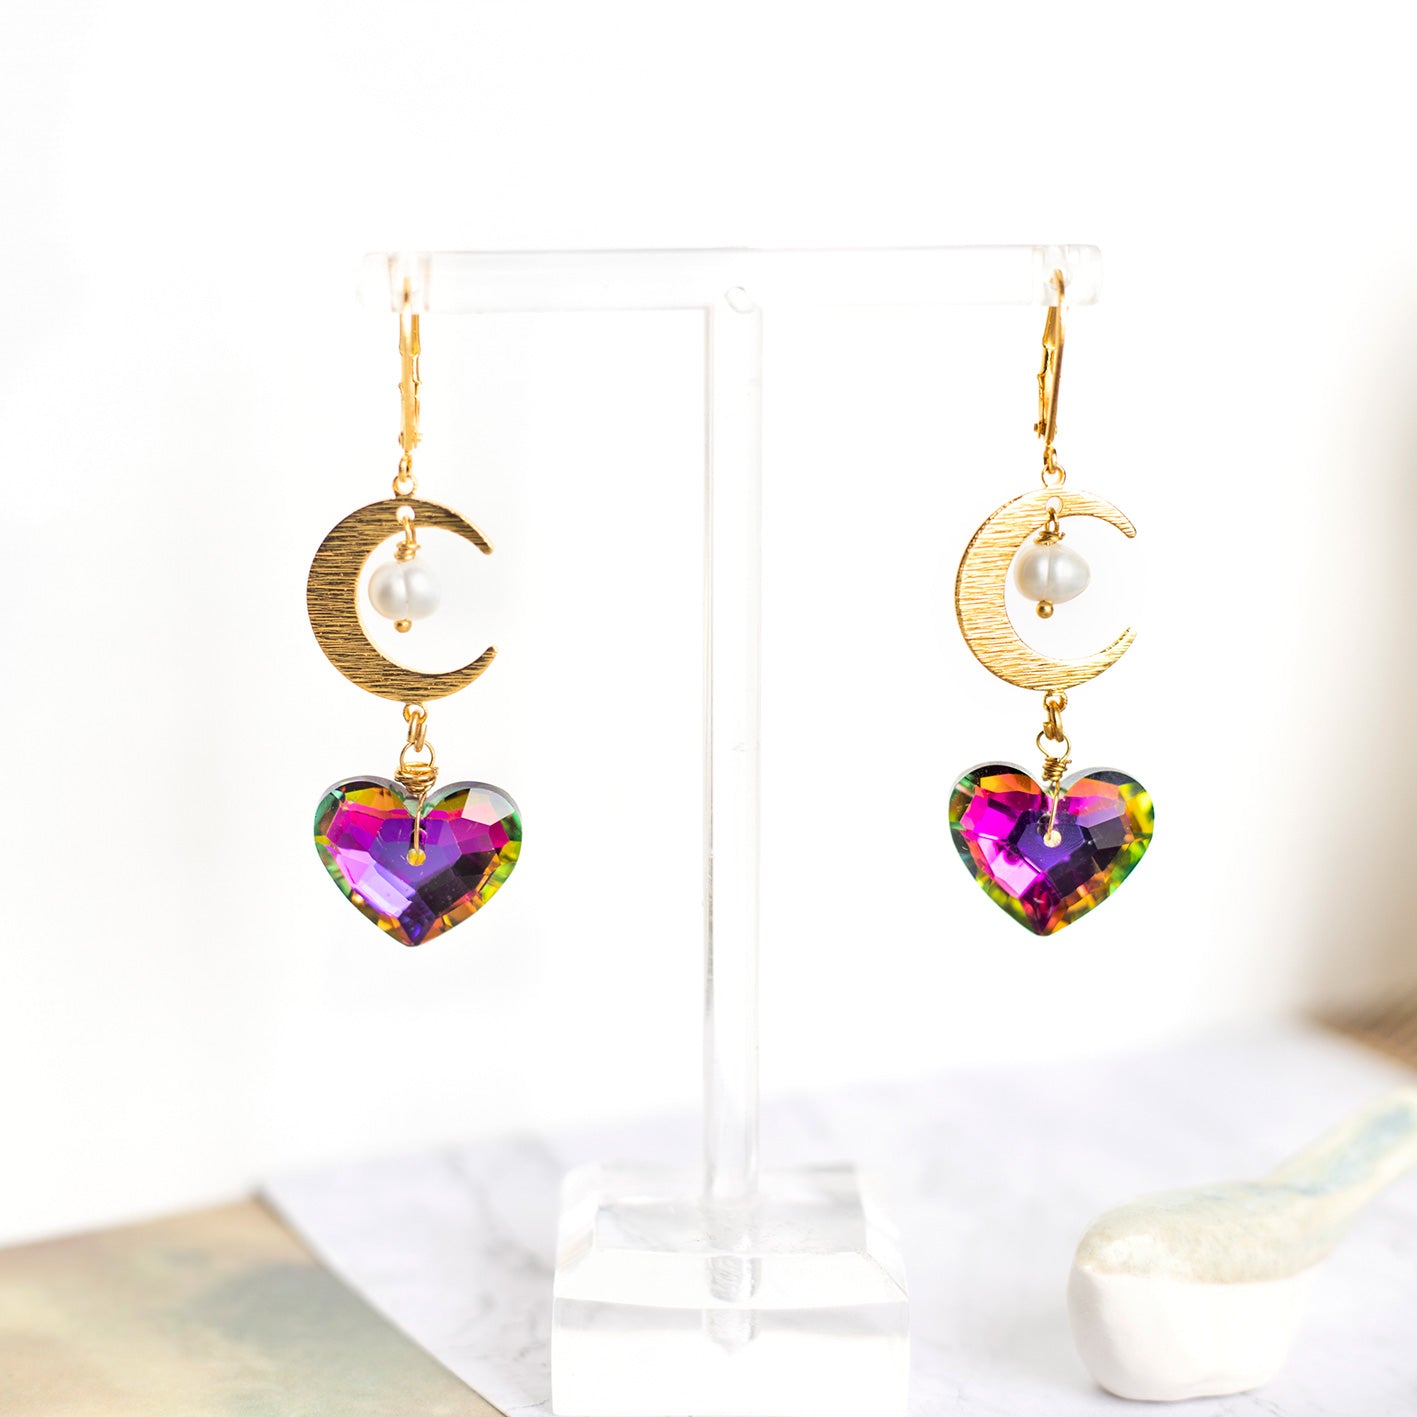 Boucles d'oreilles Coeurs en cristal violet et pendentifs Lunes dorés